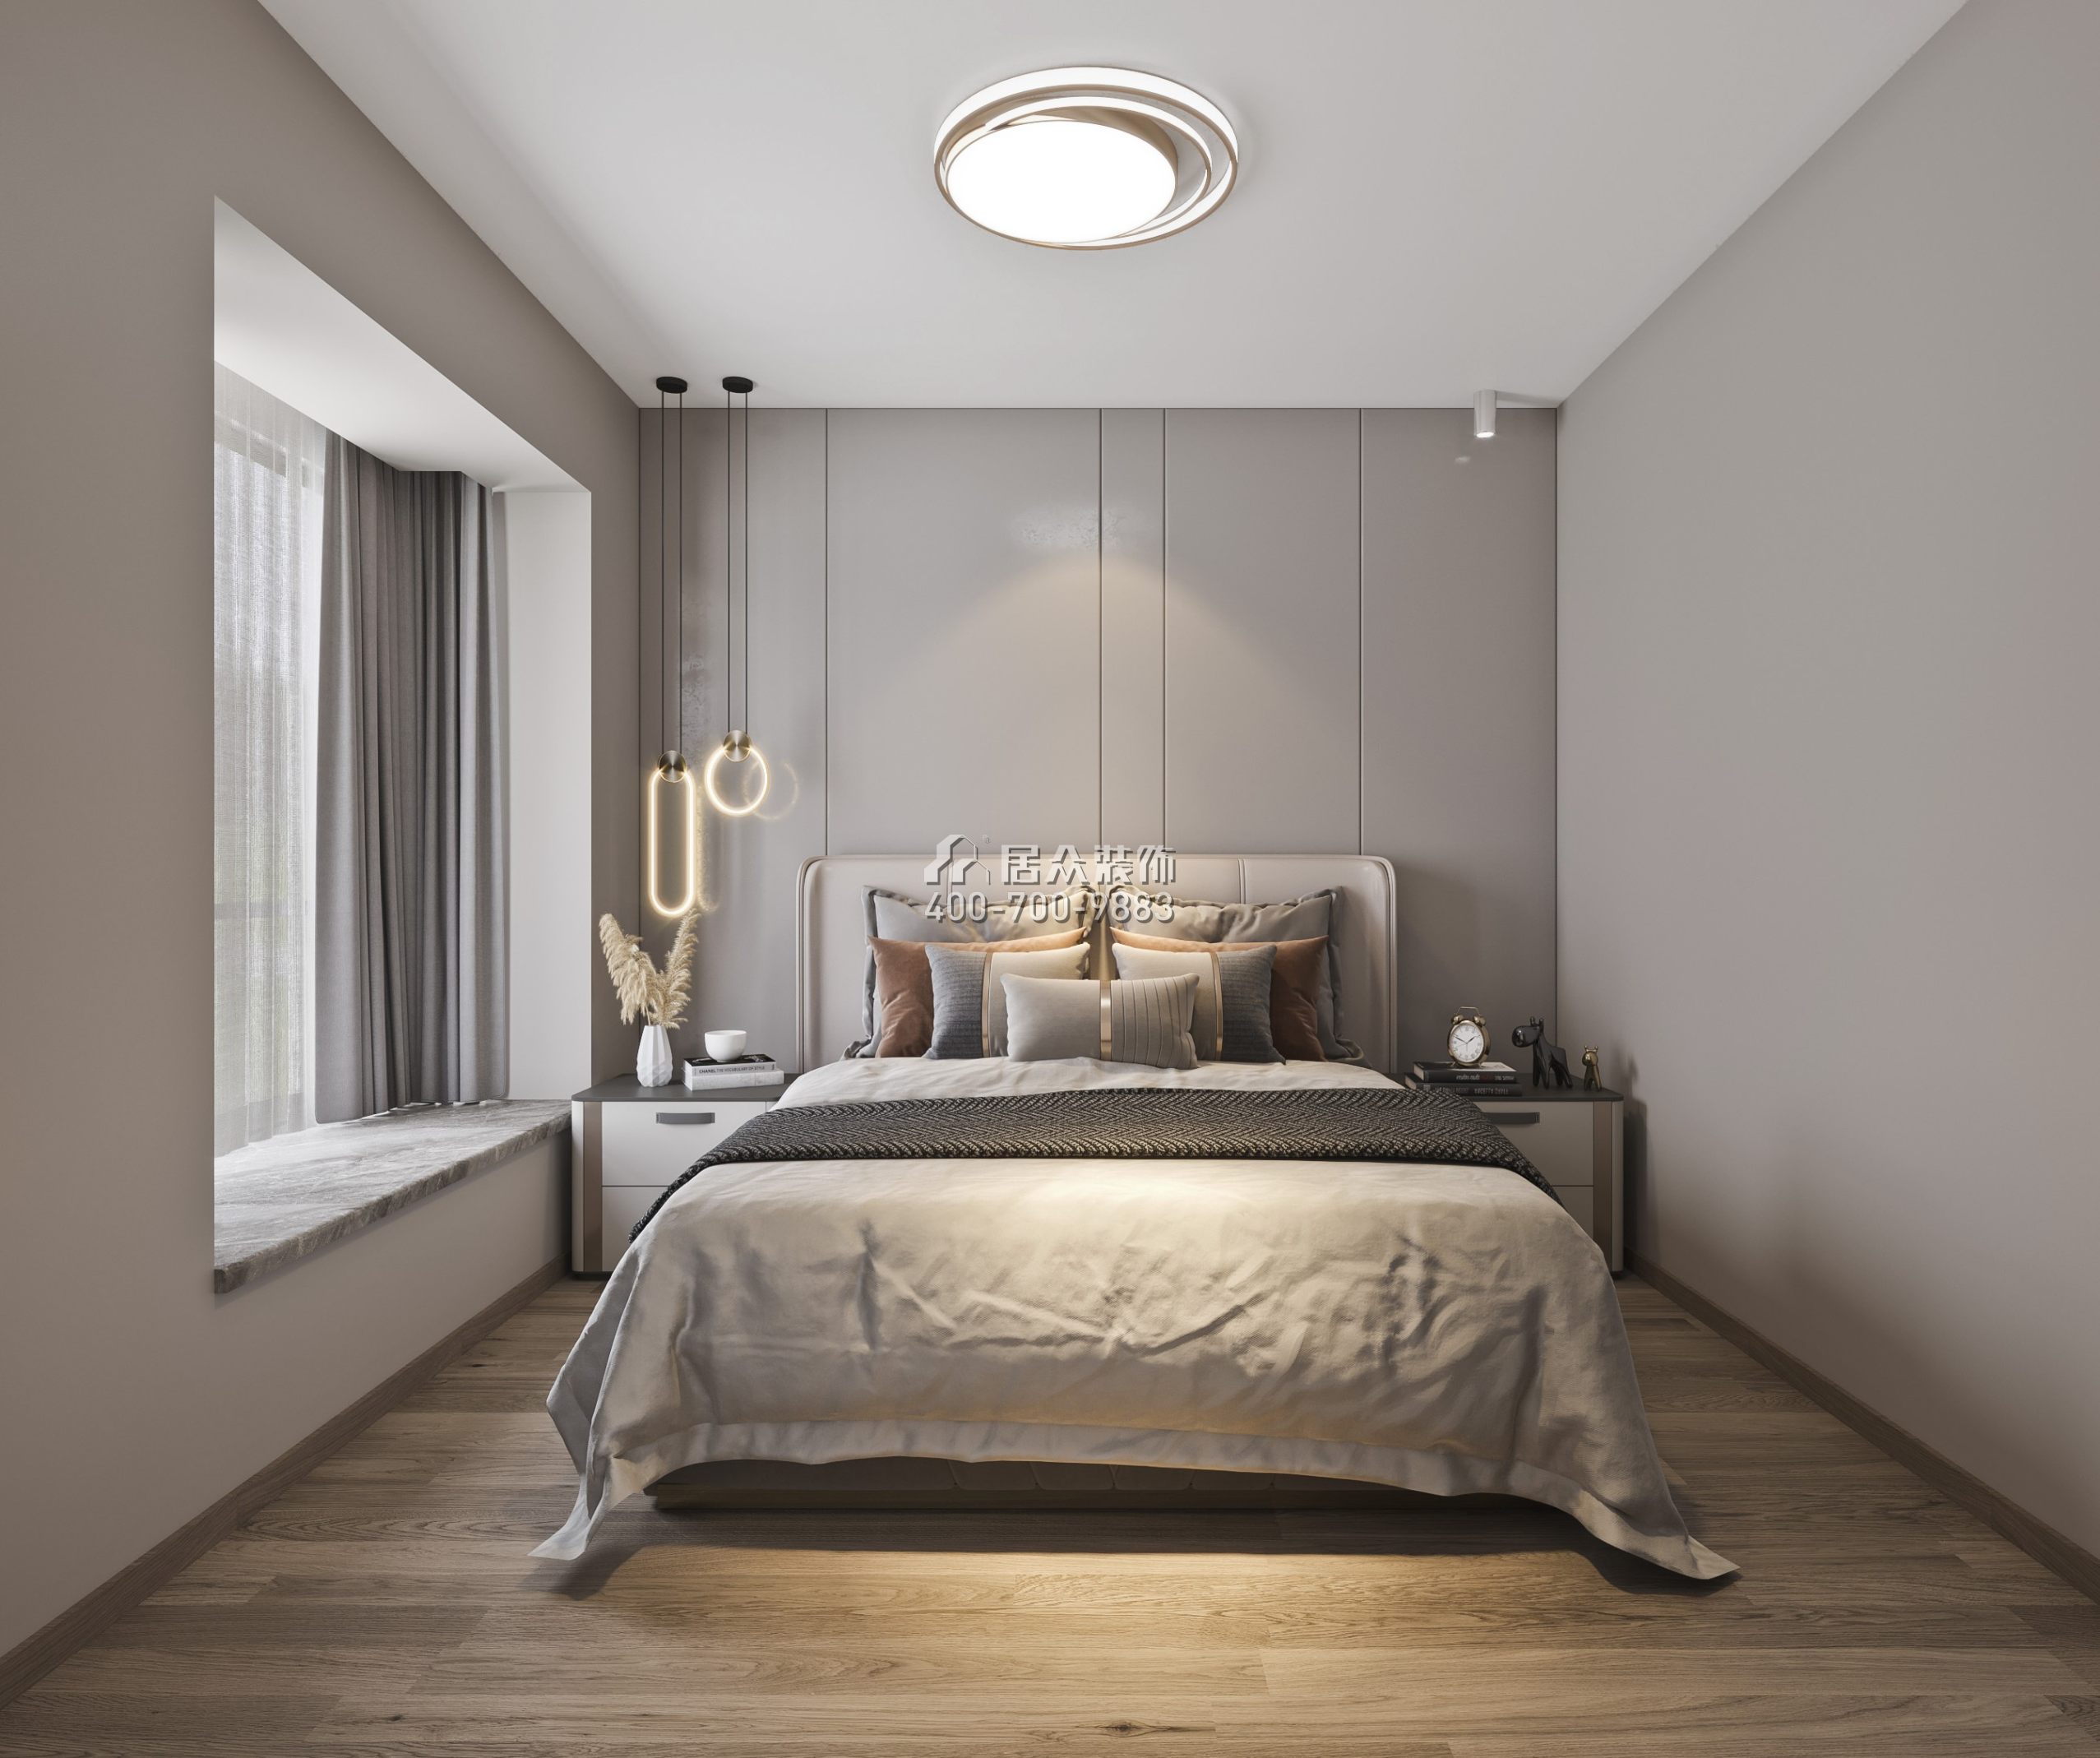 蔚藍海岸二期120平方米現代簡約風格平層戶型臥室裝修效果圖